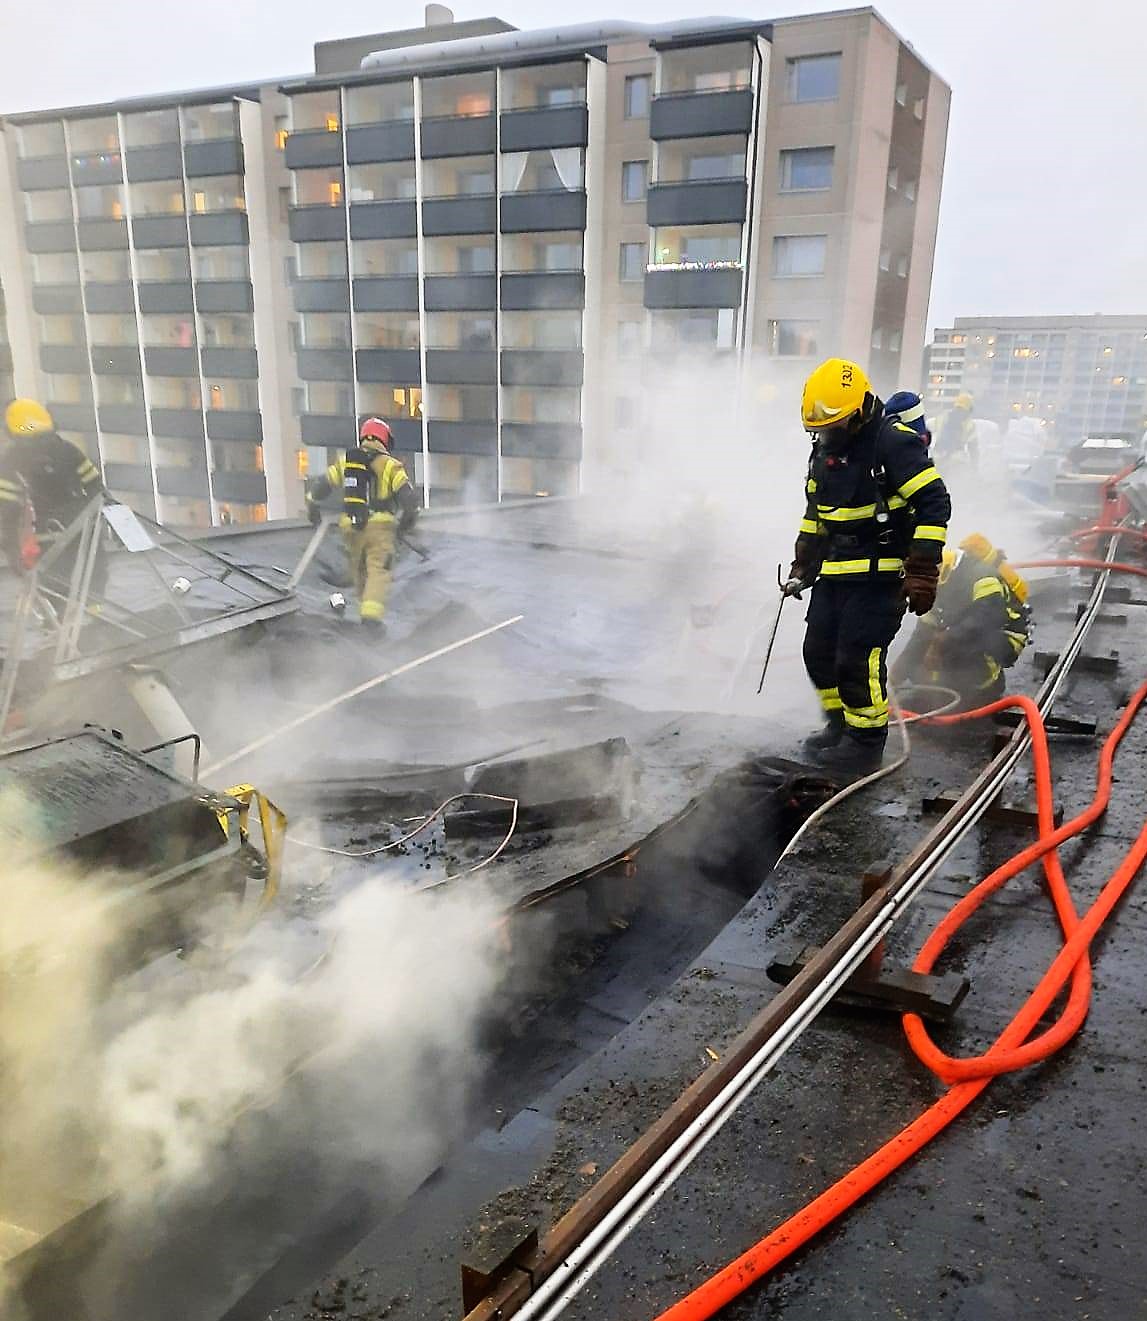 Brandmän släcker en eldsvåda på ett höghustak.